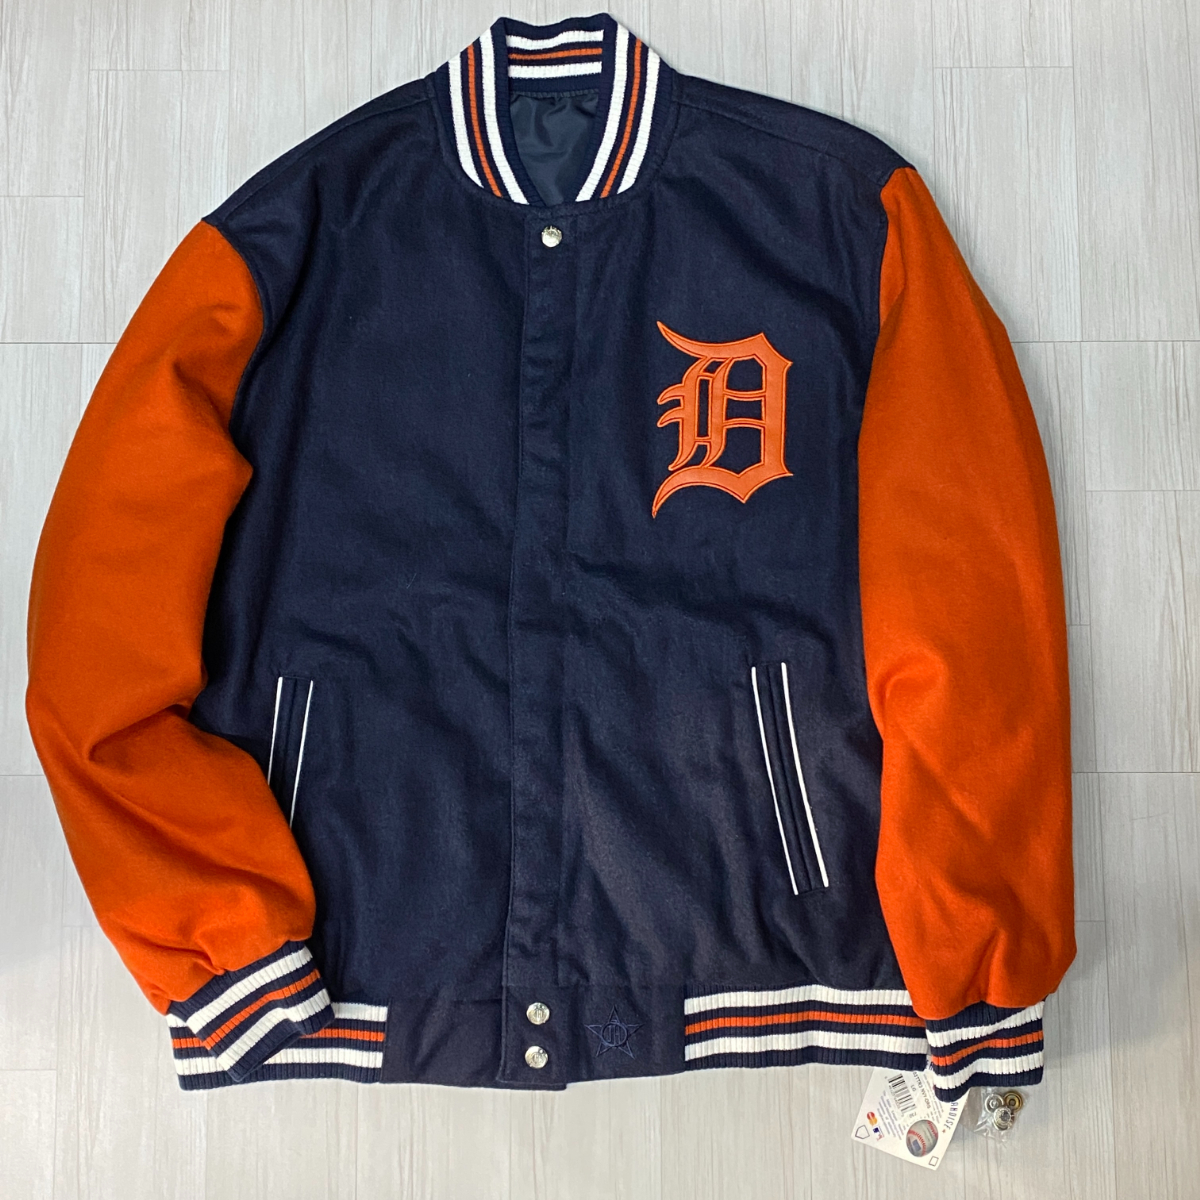 ラスト1 USA正規品 【L】 JHデザイン MLB デトロイト タイガース Tigers メジャーリーグ リバーシブル スタジャン 紺 オレンジ